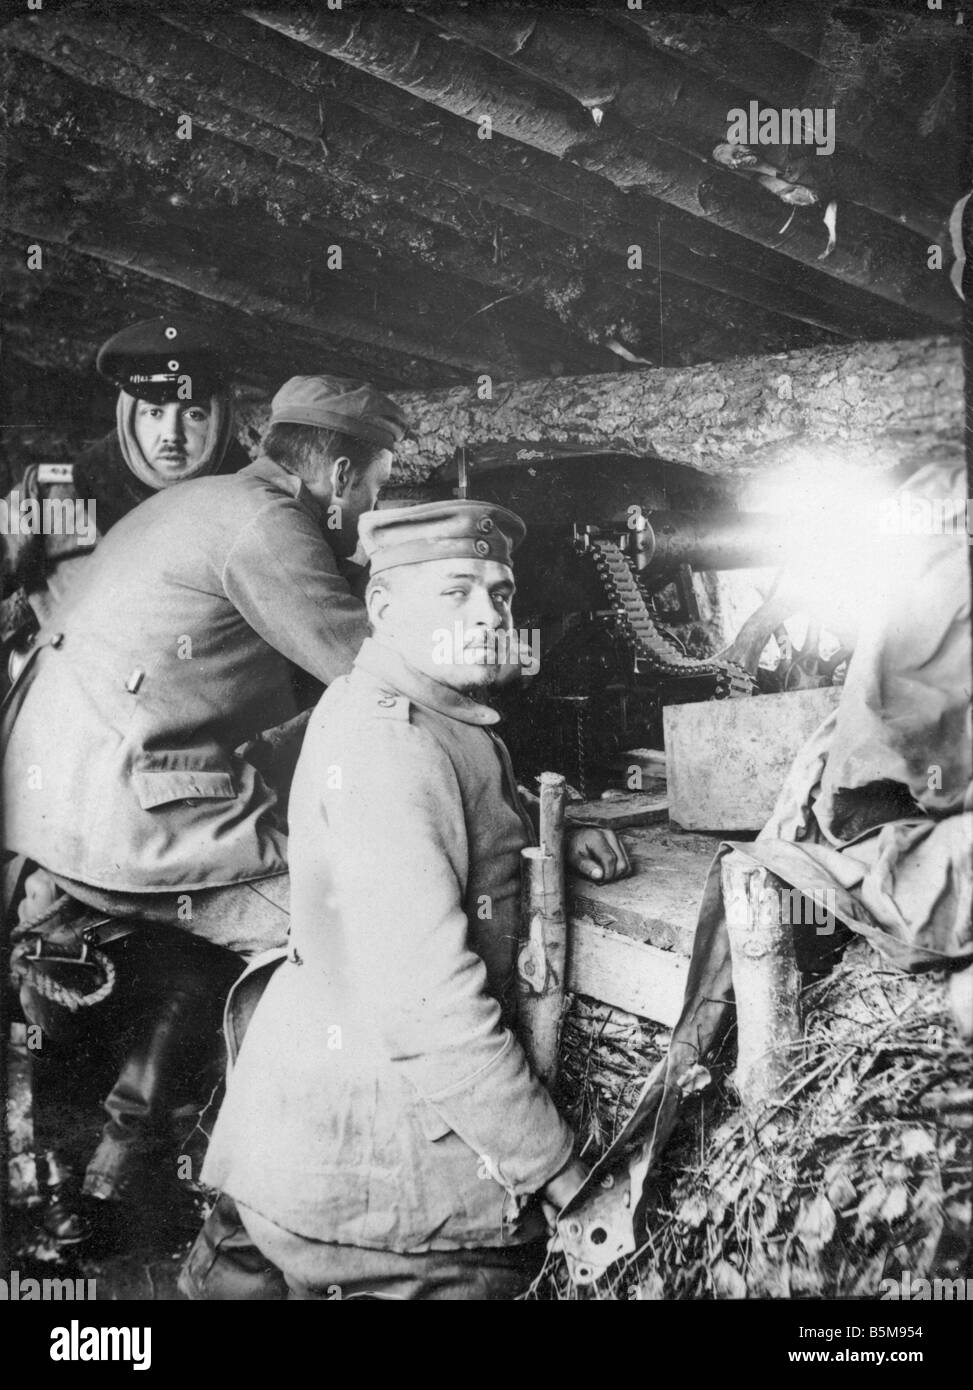 2 G55 O1 191635 canon allemand logement Front de l'Est 1916 Histoire Première Guerre mondiale, Front de l'est une mitrailleuse allemande dans une position shle Banque D'Images